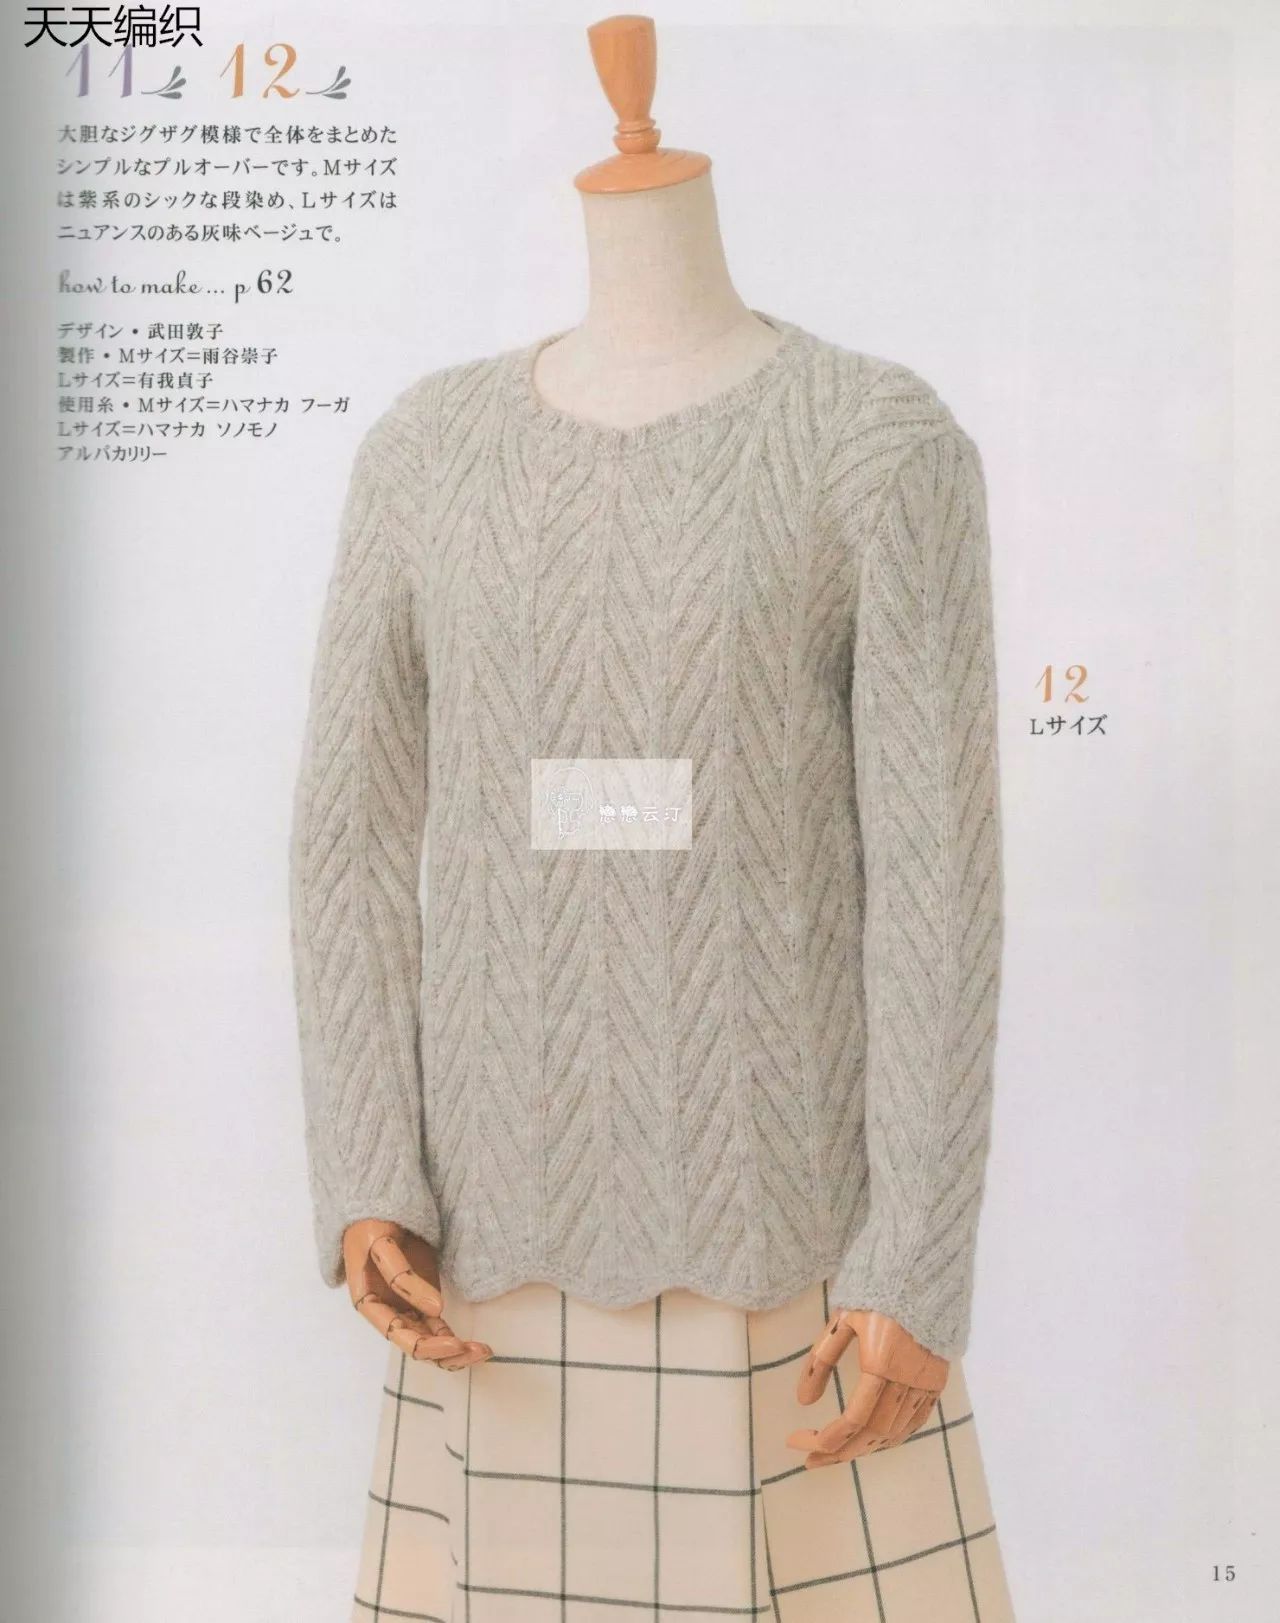 棒针编织优雅波浪形常规毛衣